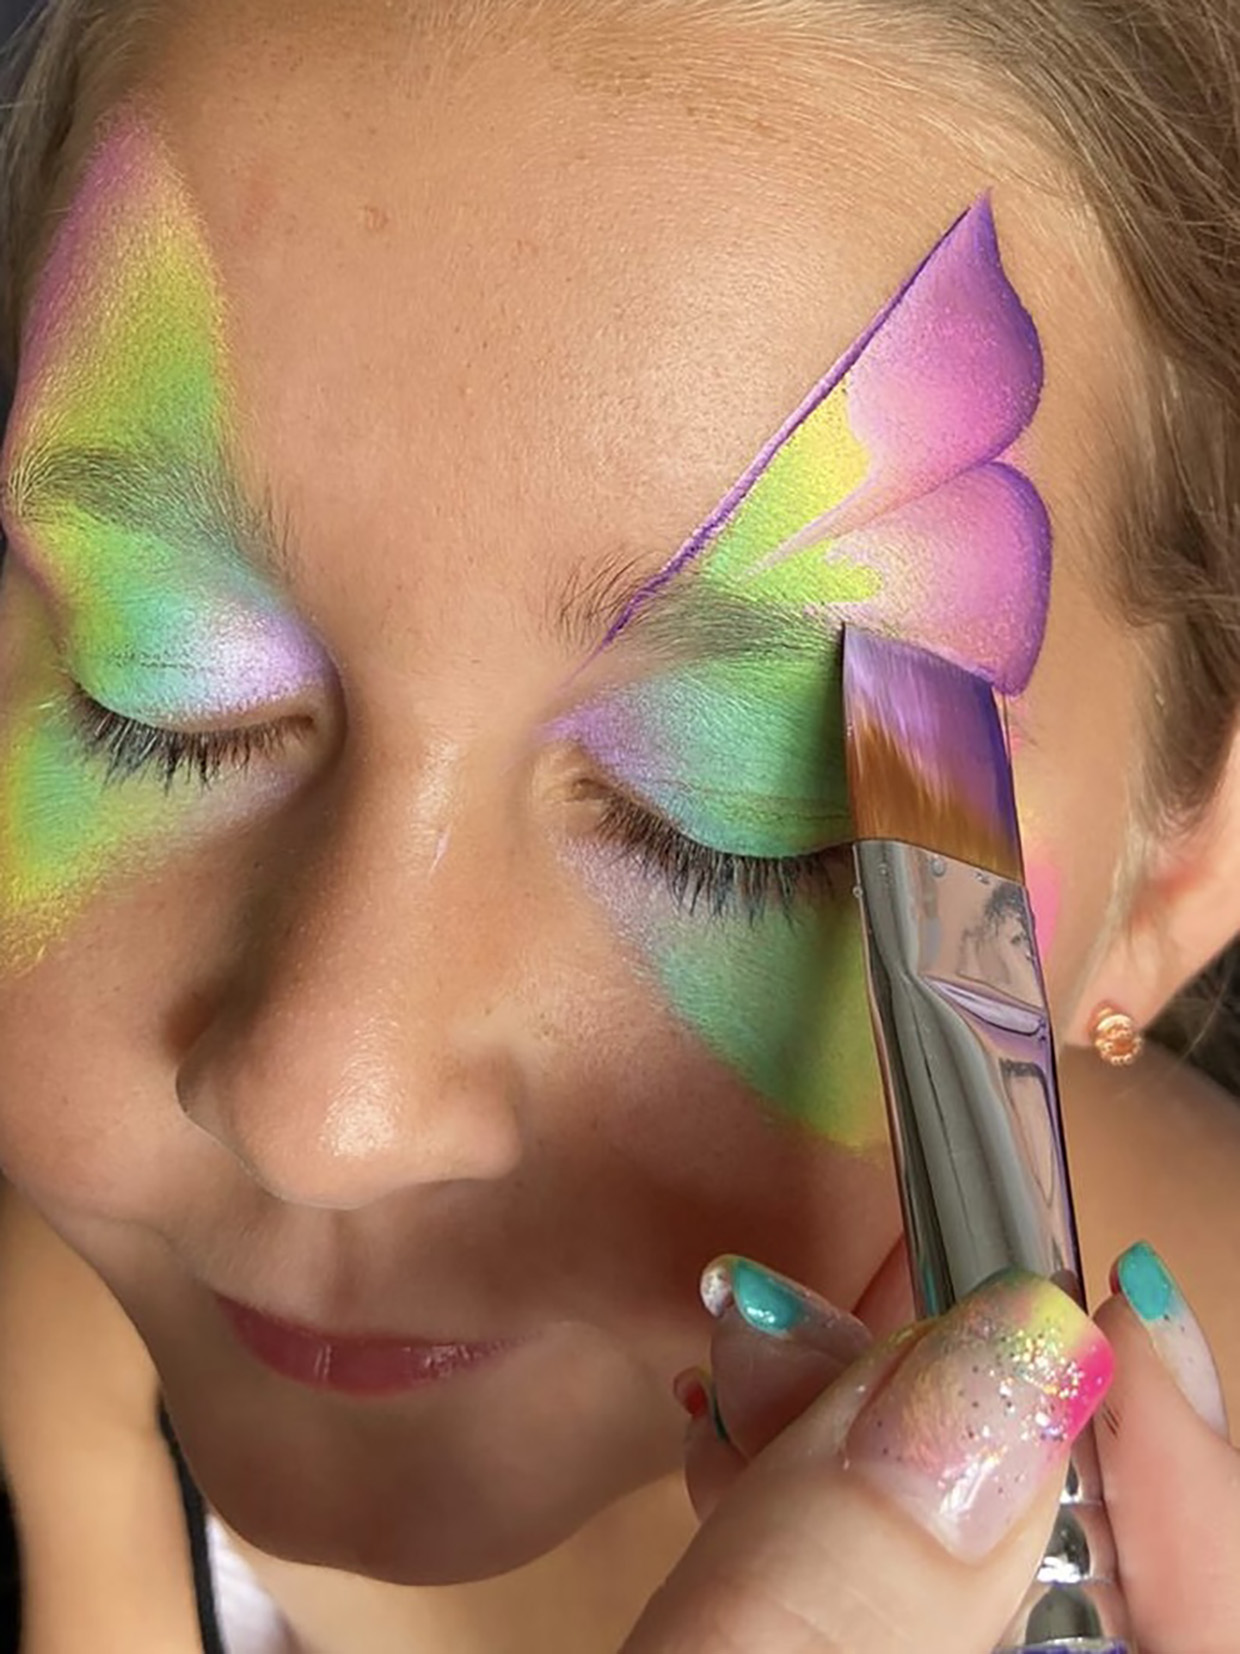 Top 7 Butterfly Face Paint Videos & Tutorials 